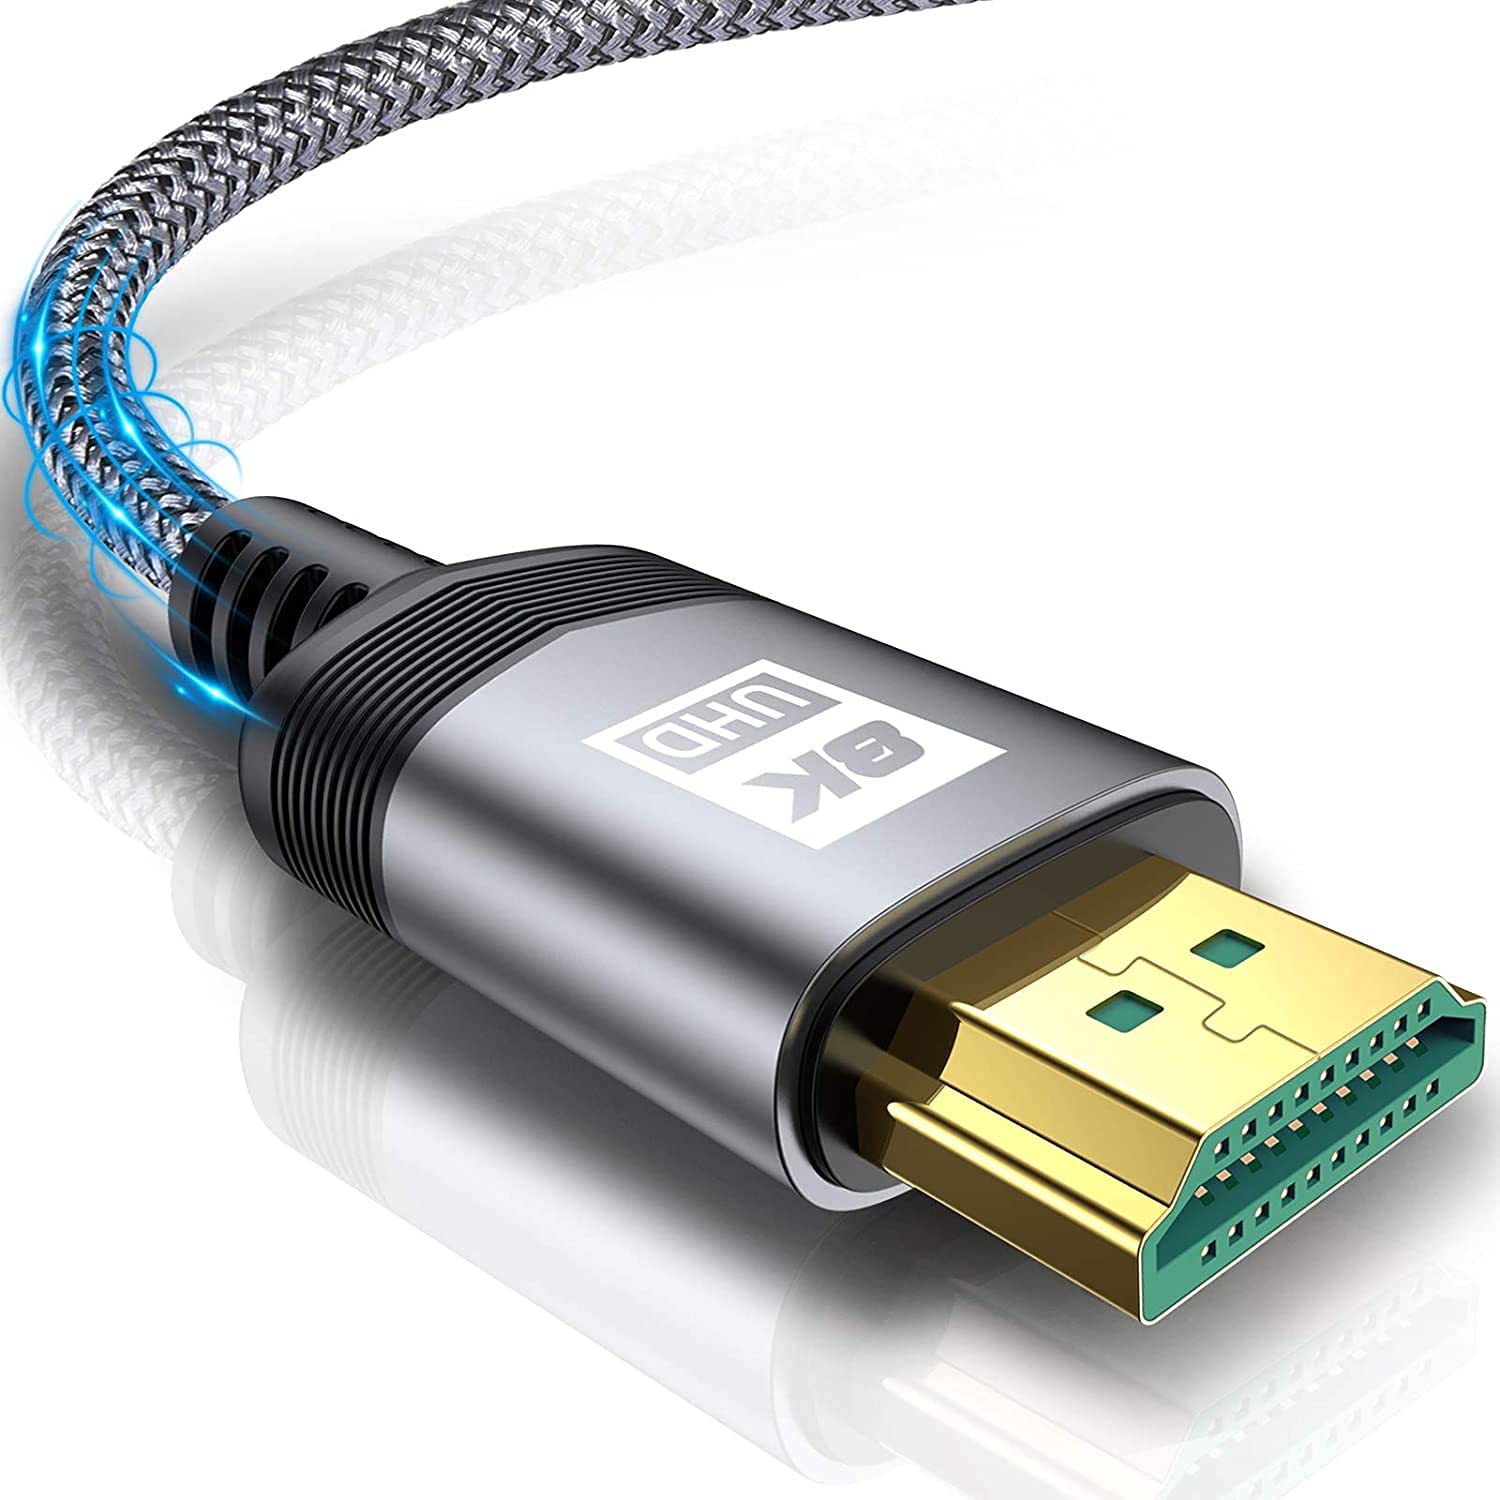 8K HDMI ケーブル 2M ハイスピード 48Gbps 2.1規格HDMI Cable 8K@60Hz 4K@120Hz/144Hz 7680x4320p 超高速 UHD HDR HDCP eARC 3Dイーサネット ARC hdmi ケーブル - 8K対応 Apple TV,PS5/PS4, PCモニター,Nintendo Switchなど適用 (グレー)